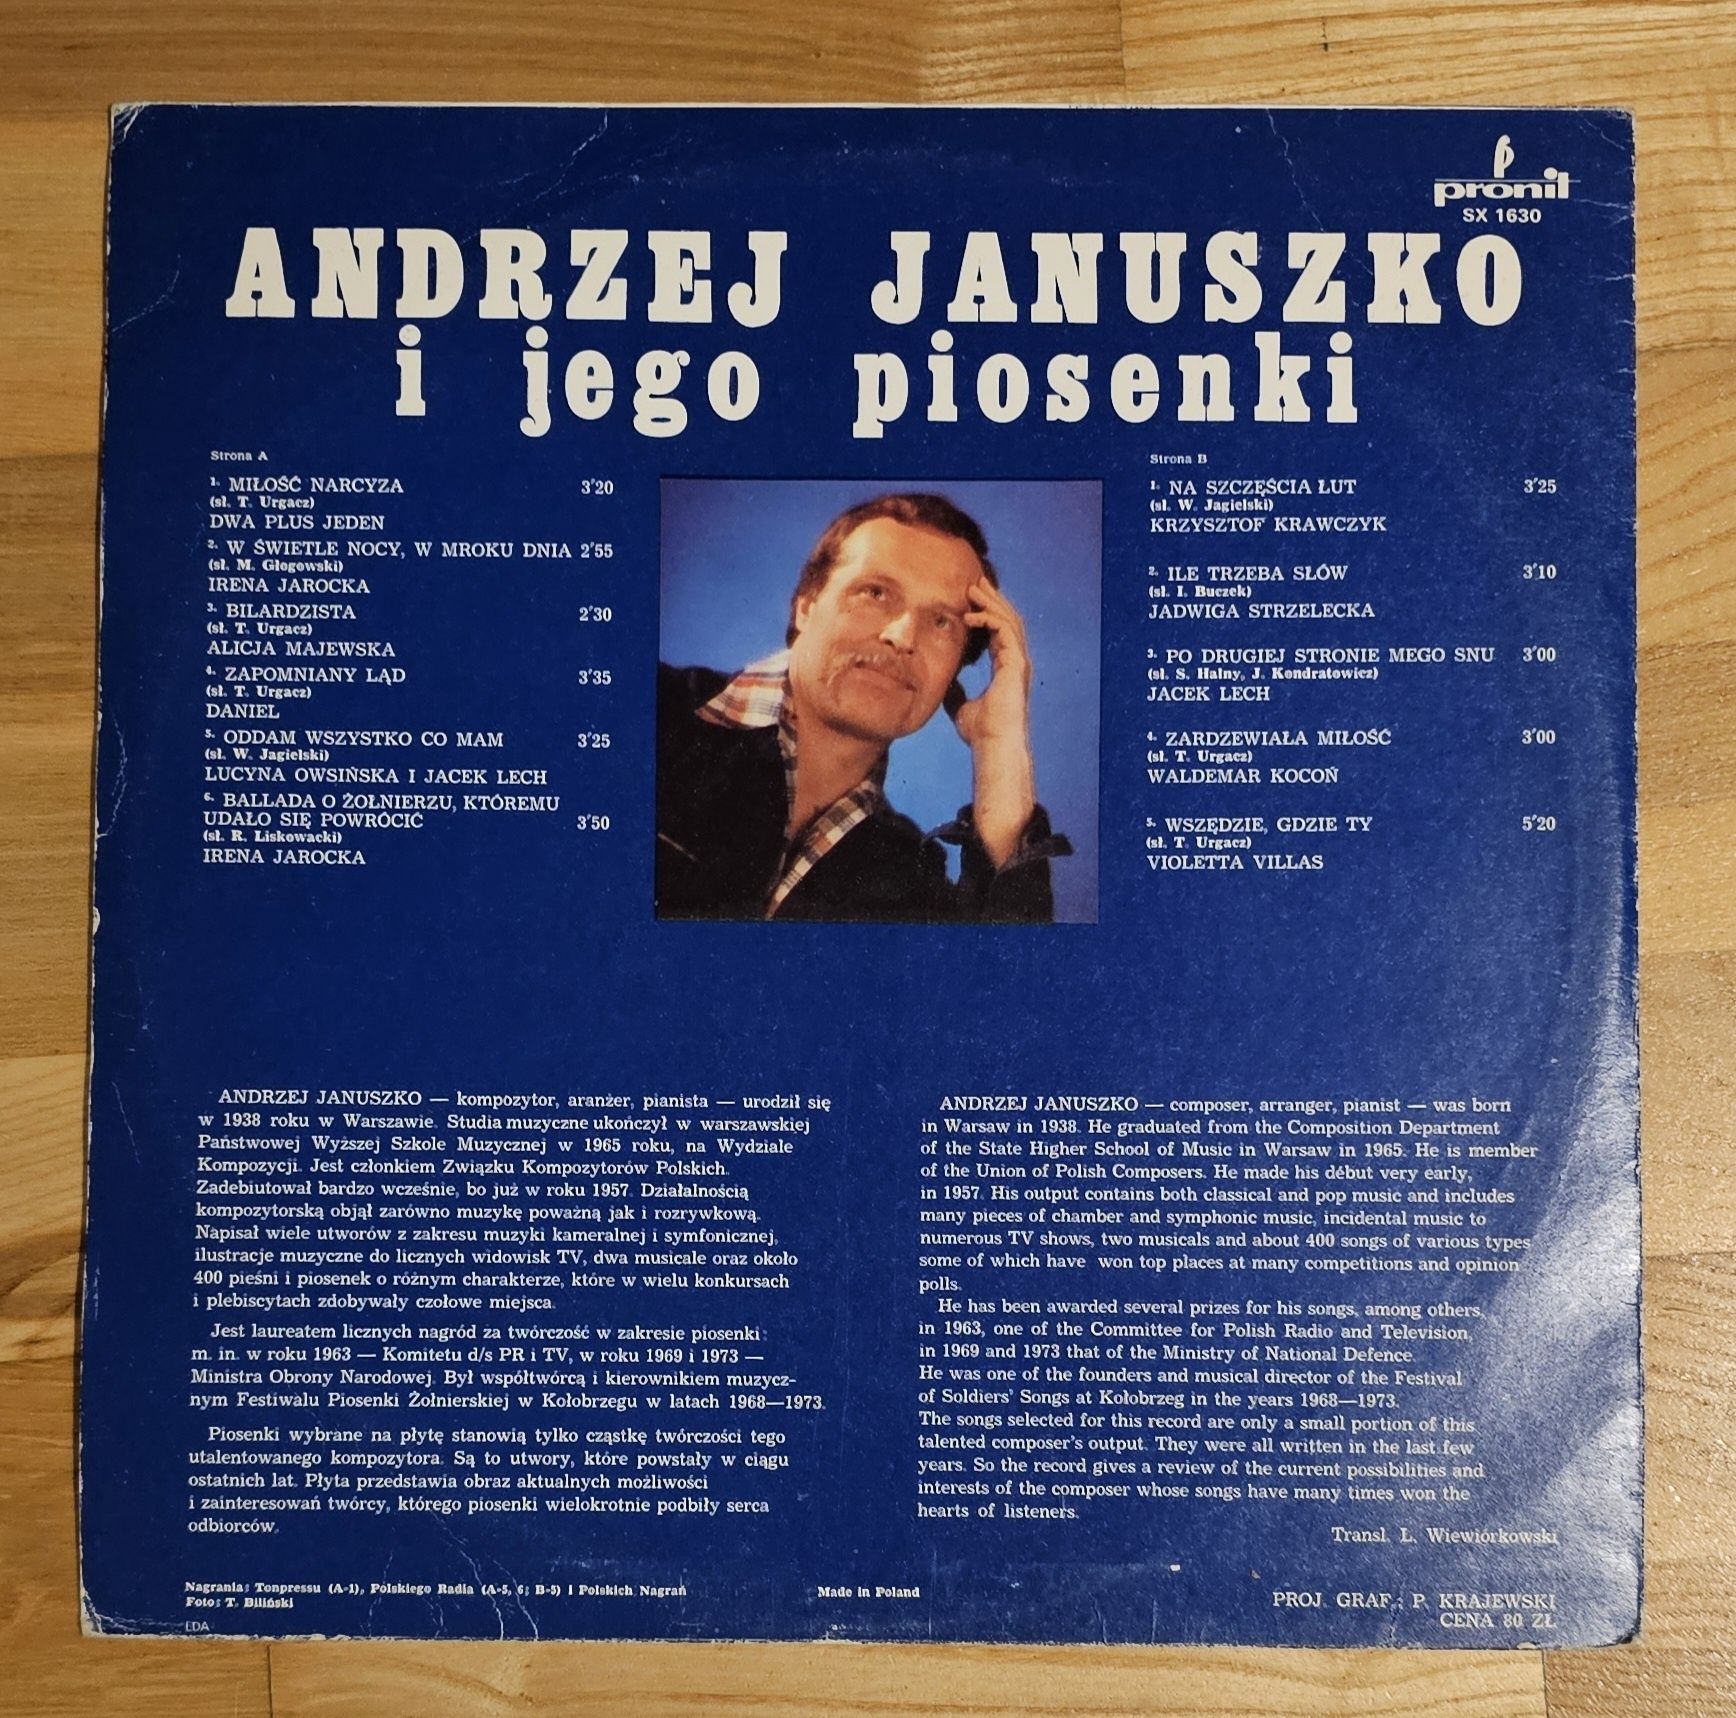 Andrzej Januszko i jego piosenki